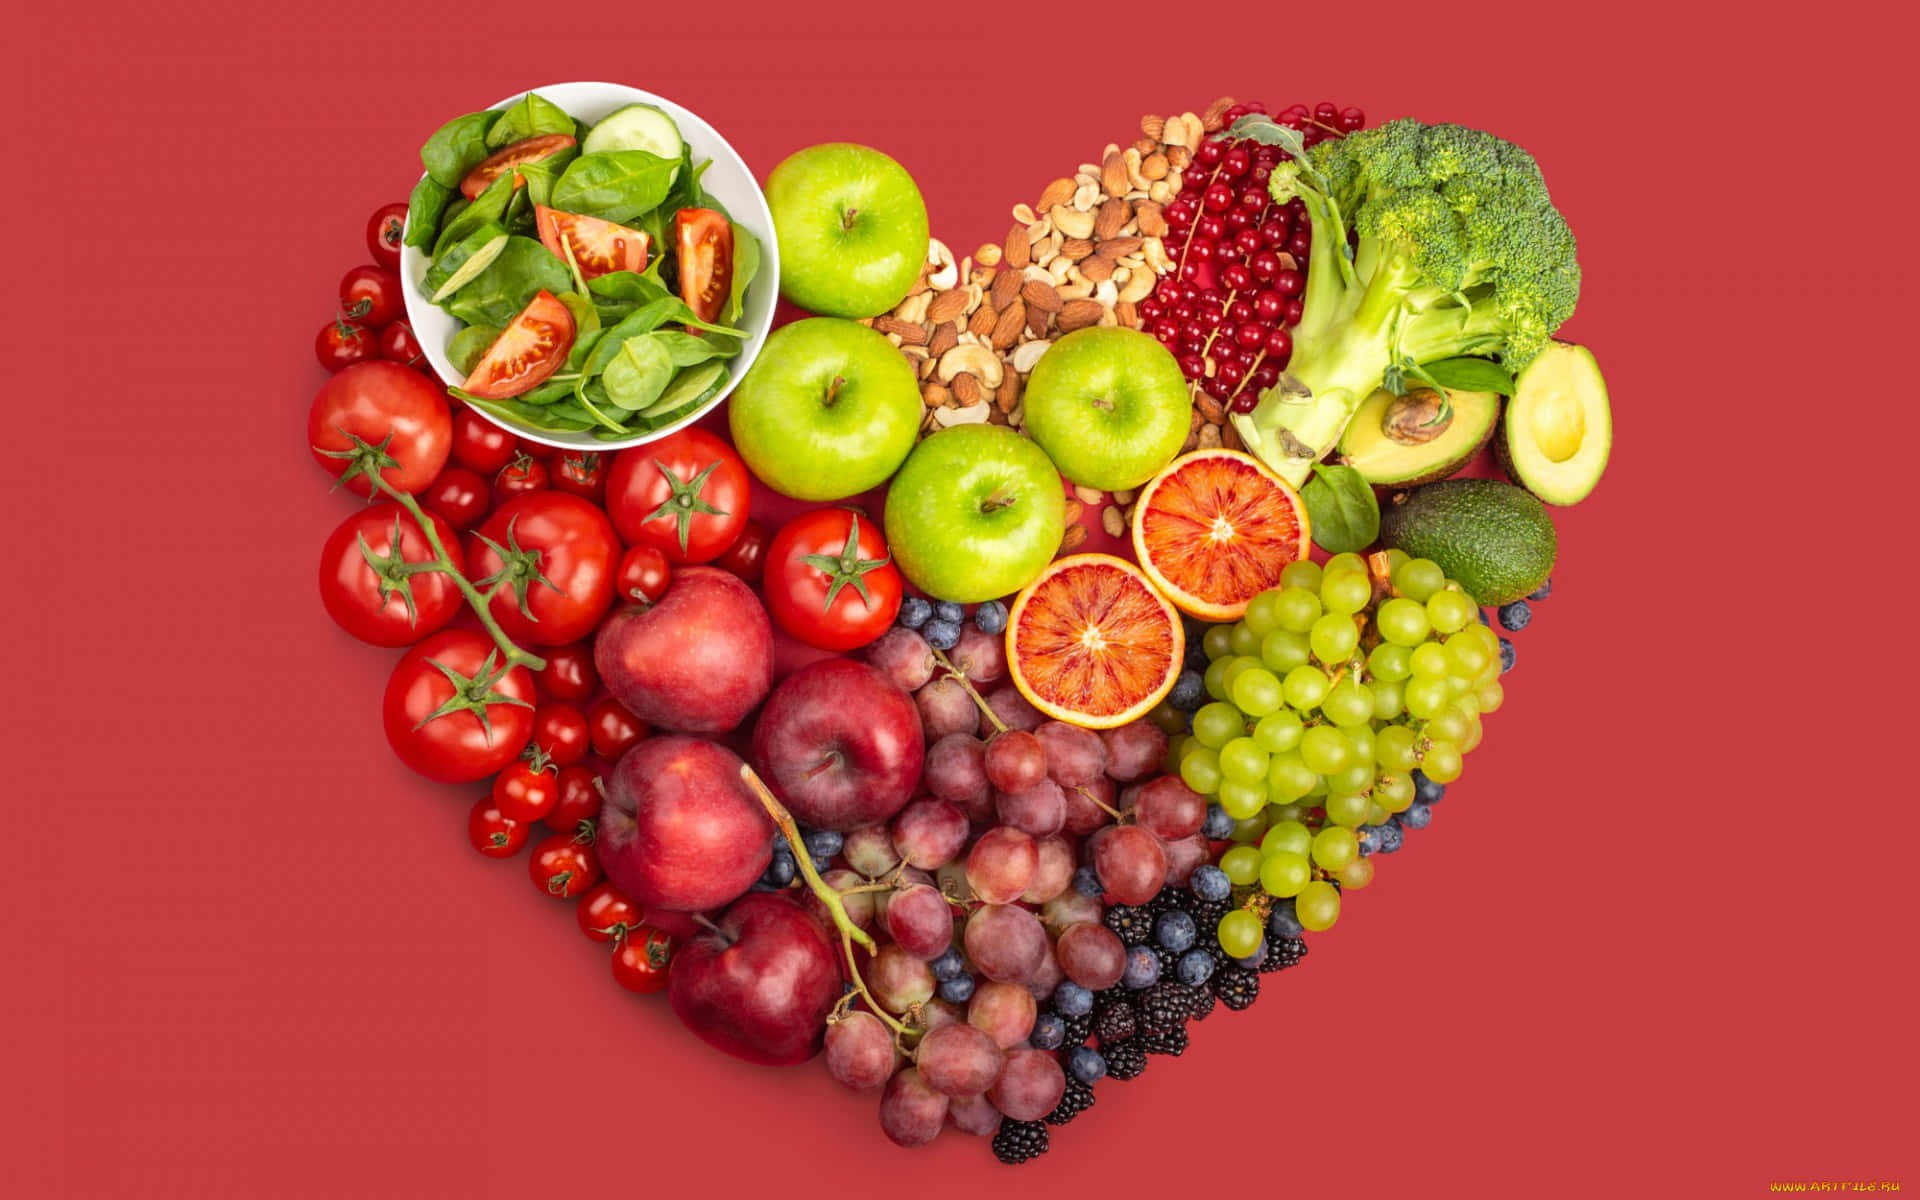 Hjerteformedefrugter Og Grøntsager